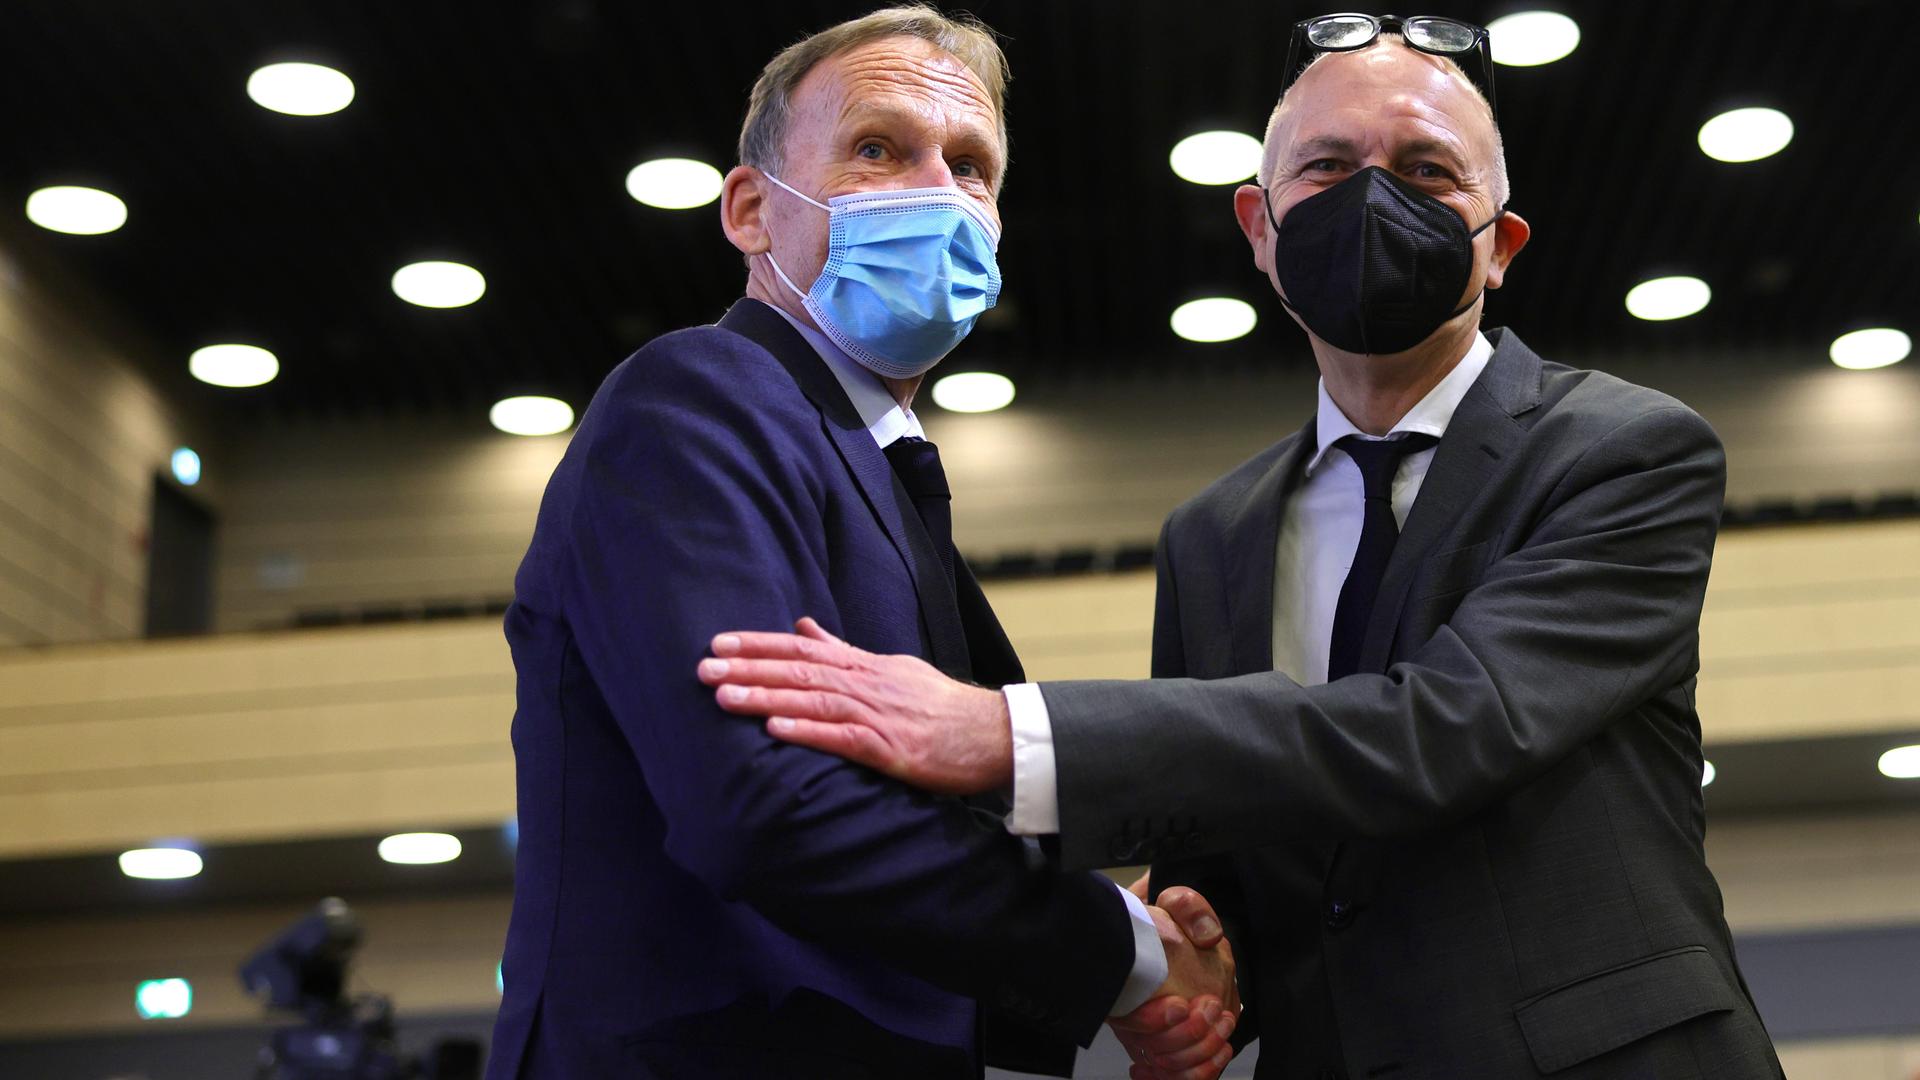 Hans-Joachim Watzke und Bernd Neuendorf schütteln sich die Hand, beide tragen einen Mund-Nasen-Schutz